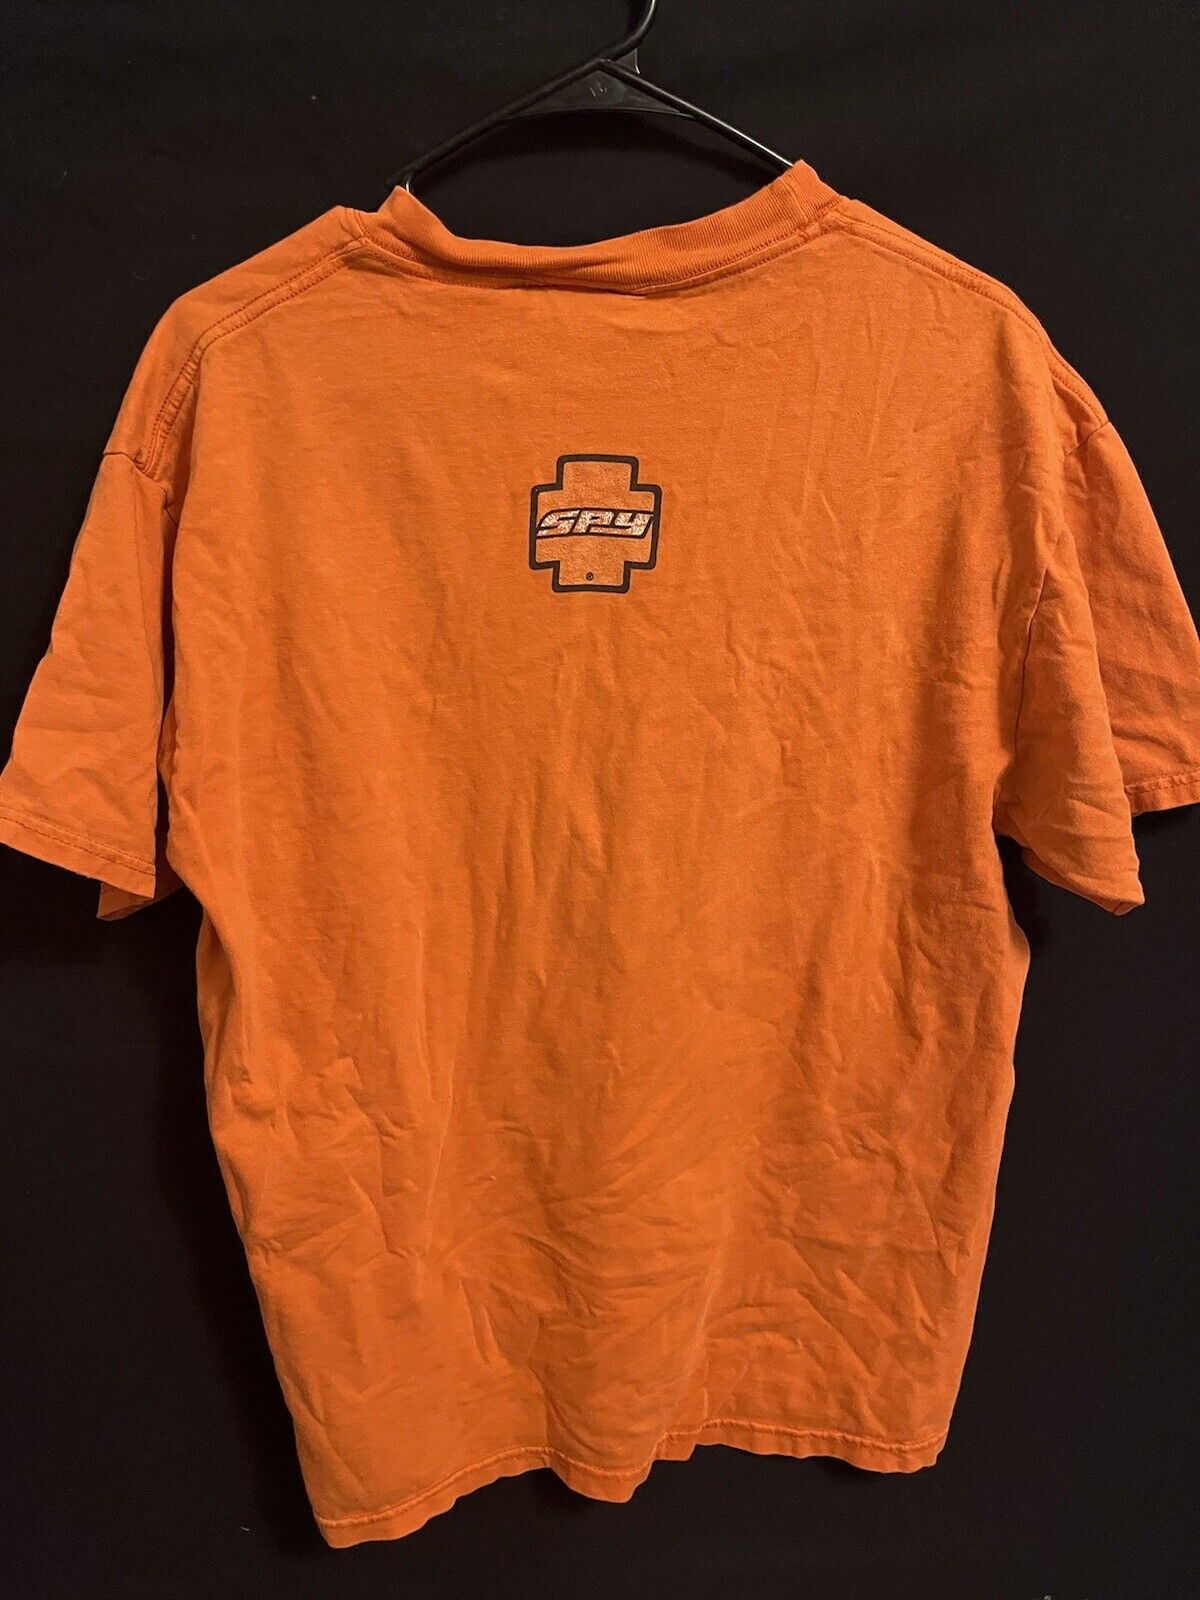 Vintage SPY Optic Logo Sunglasses Promo T Shirt Size Large Orange Y2K Skate